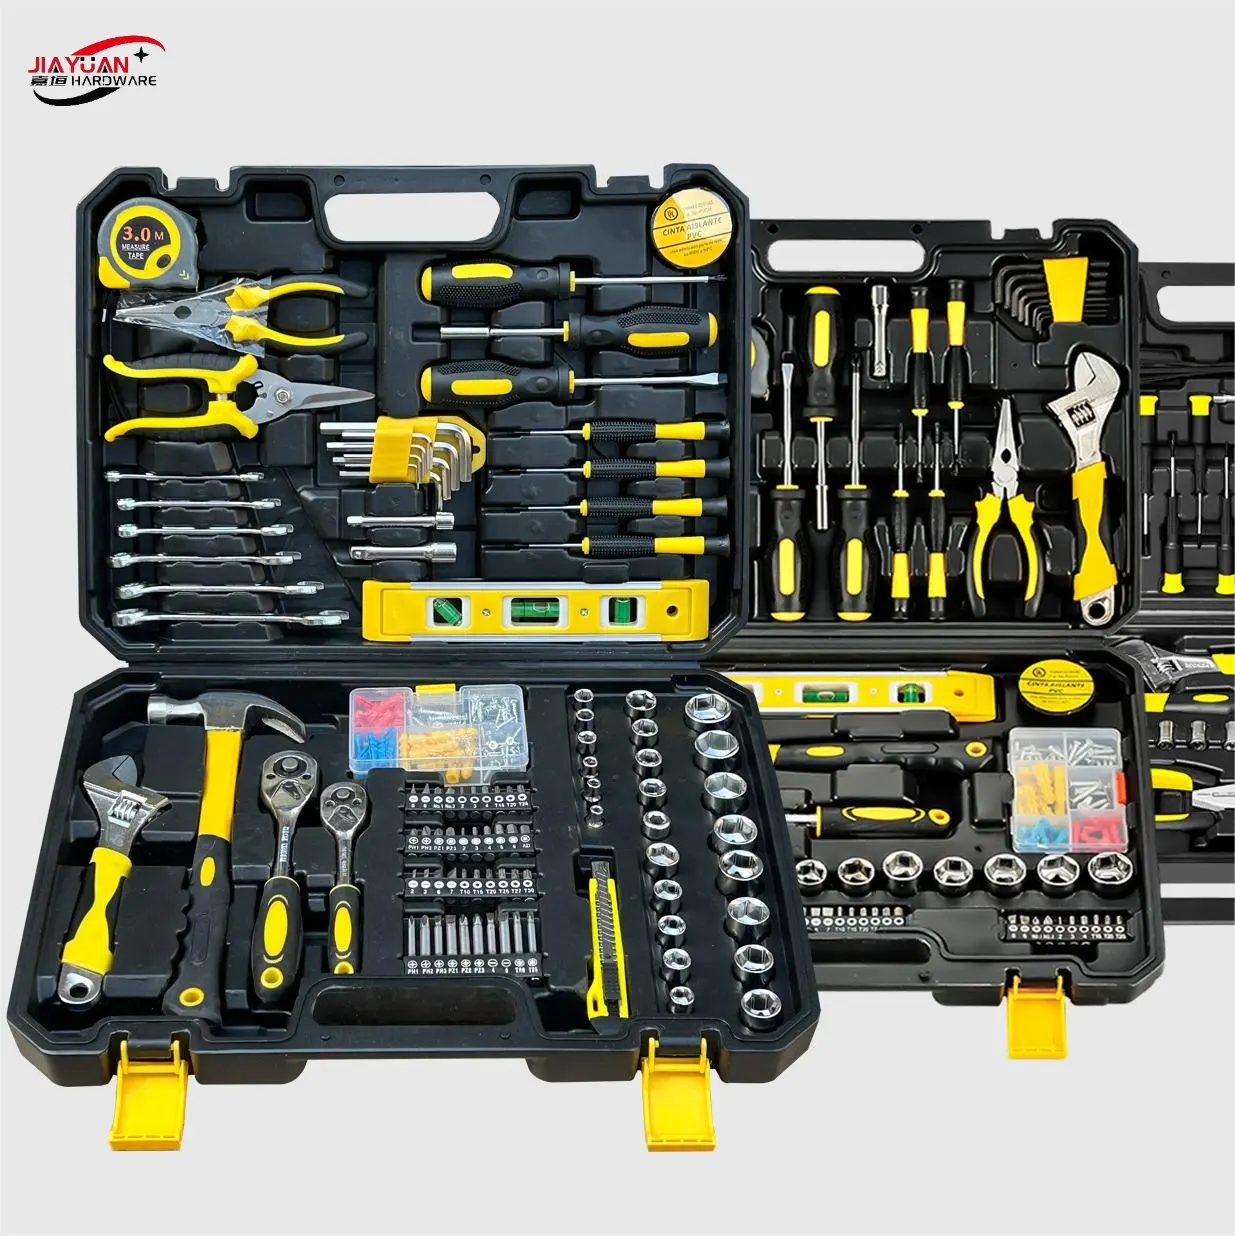 Kit de ferramentas manuais para reparo de caixa de ferramentas profissional 108 unidades item No.Ykjt-28 conjunto de ferramentas combinadas